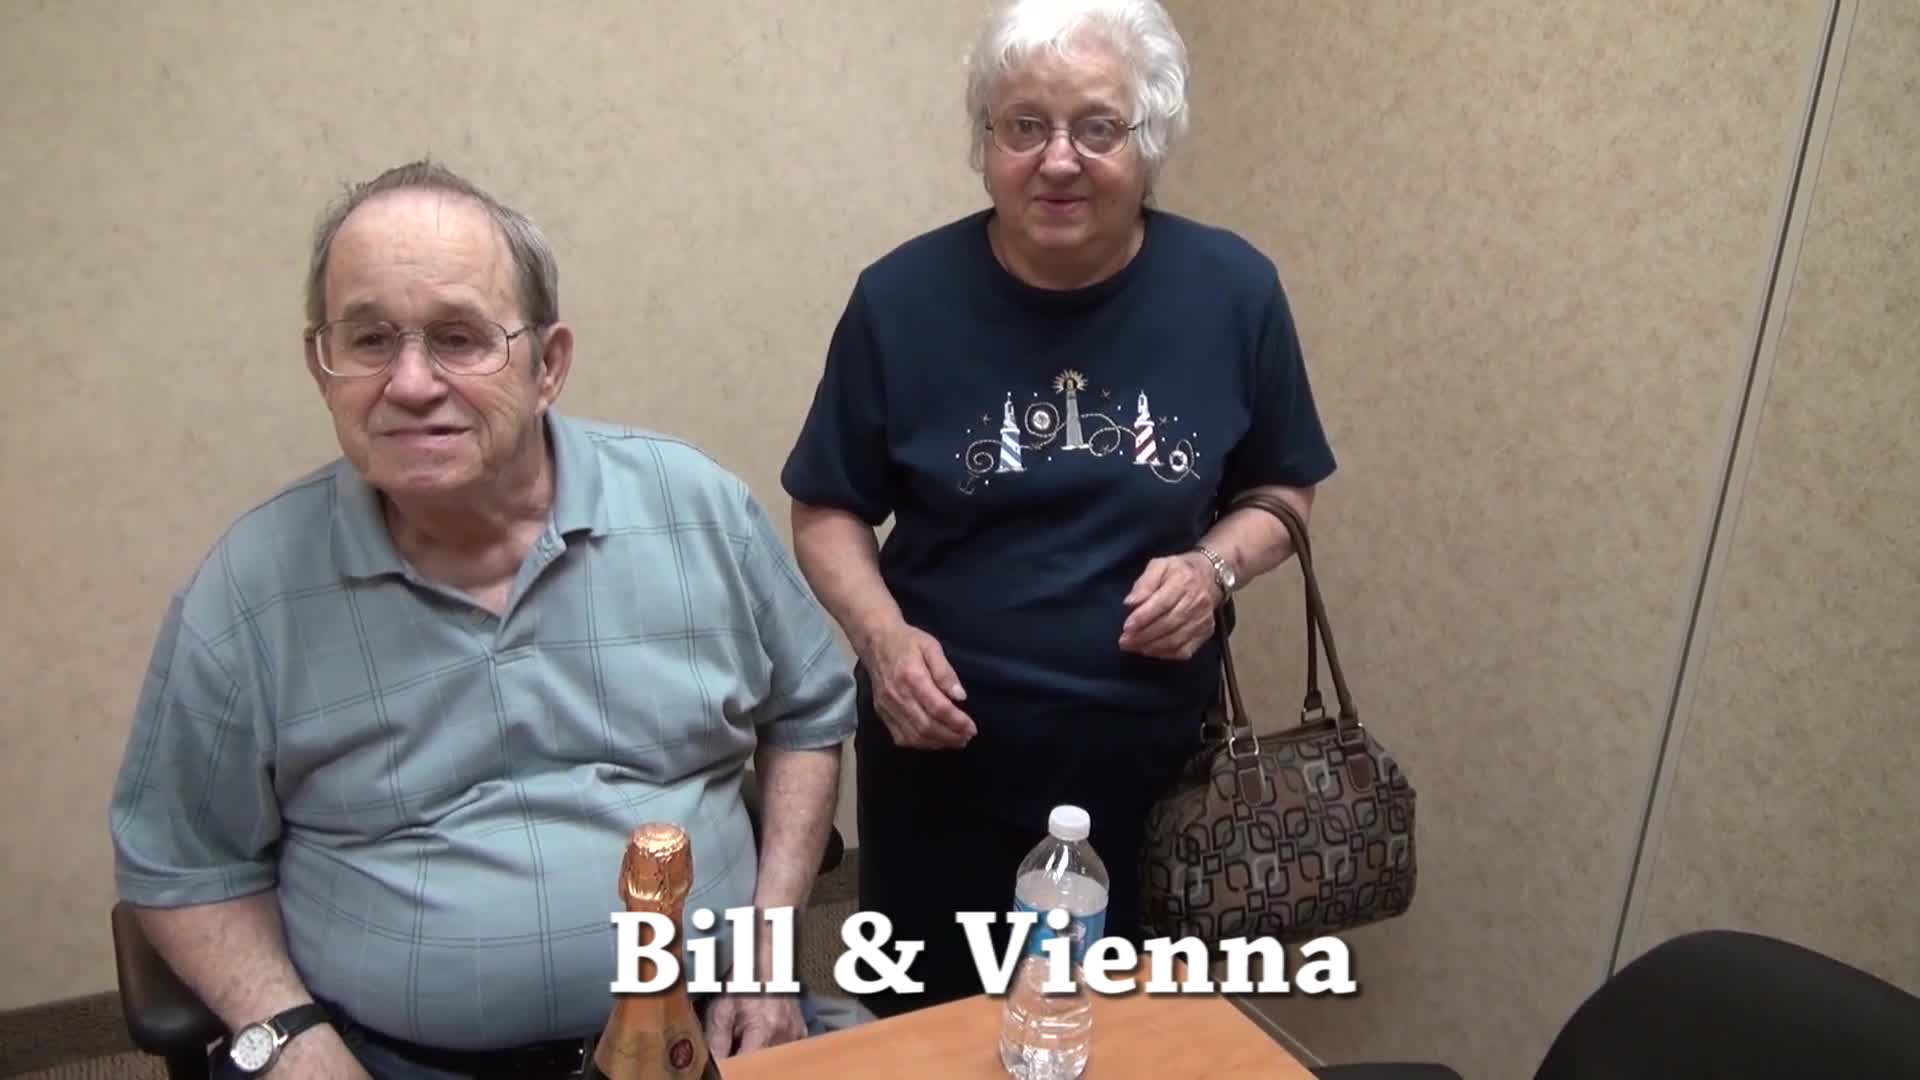 Bill & Vienna